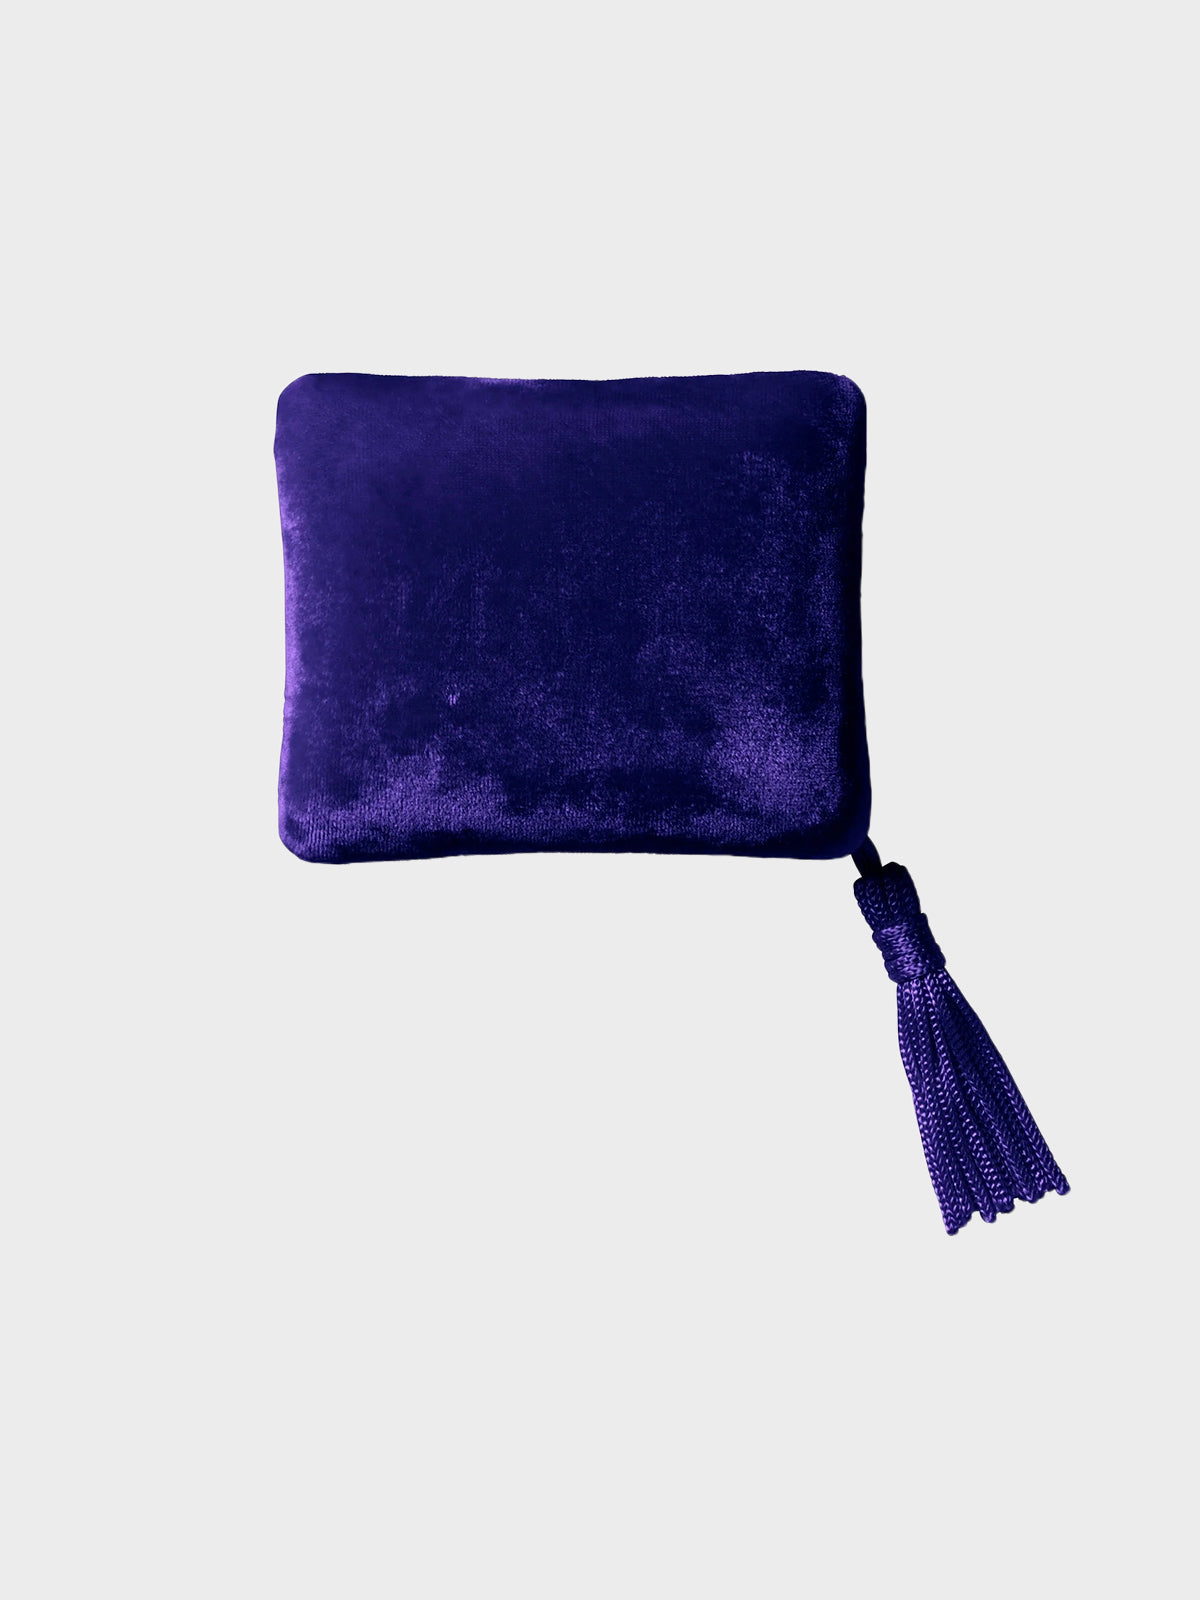 Velvet Jewelry Box in Purple